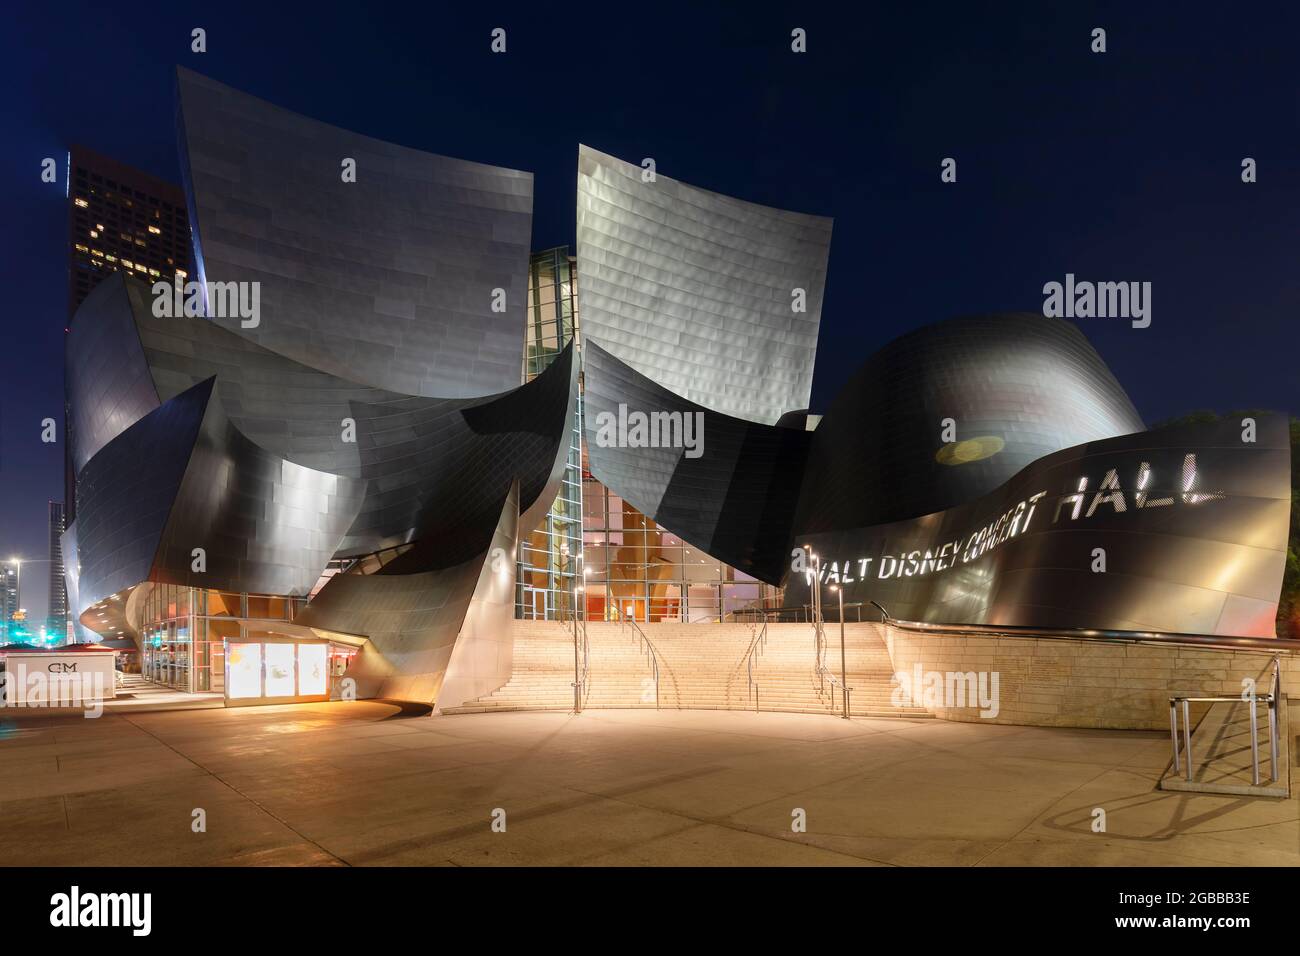 Walt Disney Concert Hall, Architekt Frank Gehry, Los Angeles, Kalifornien, Vereinigte Staaten von Amerika, Nordamerika Stockfoto